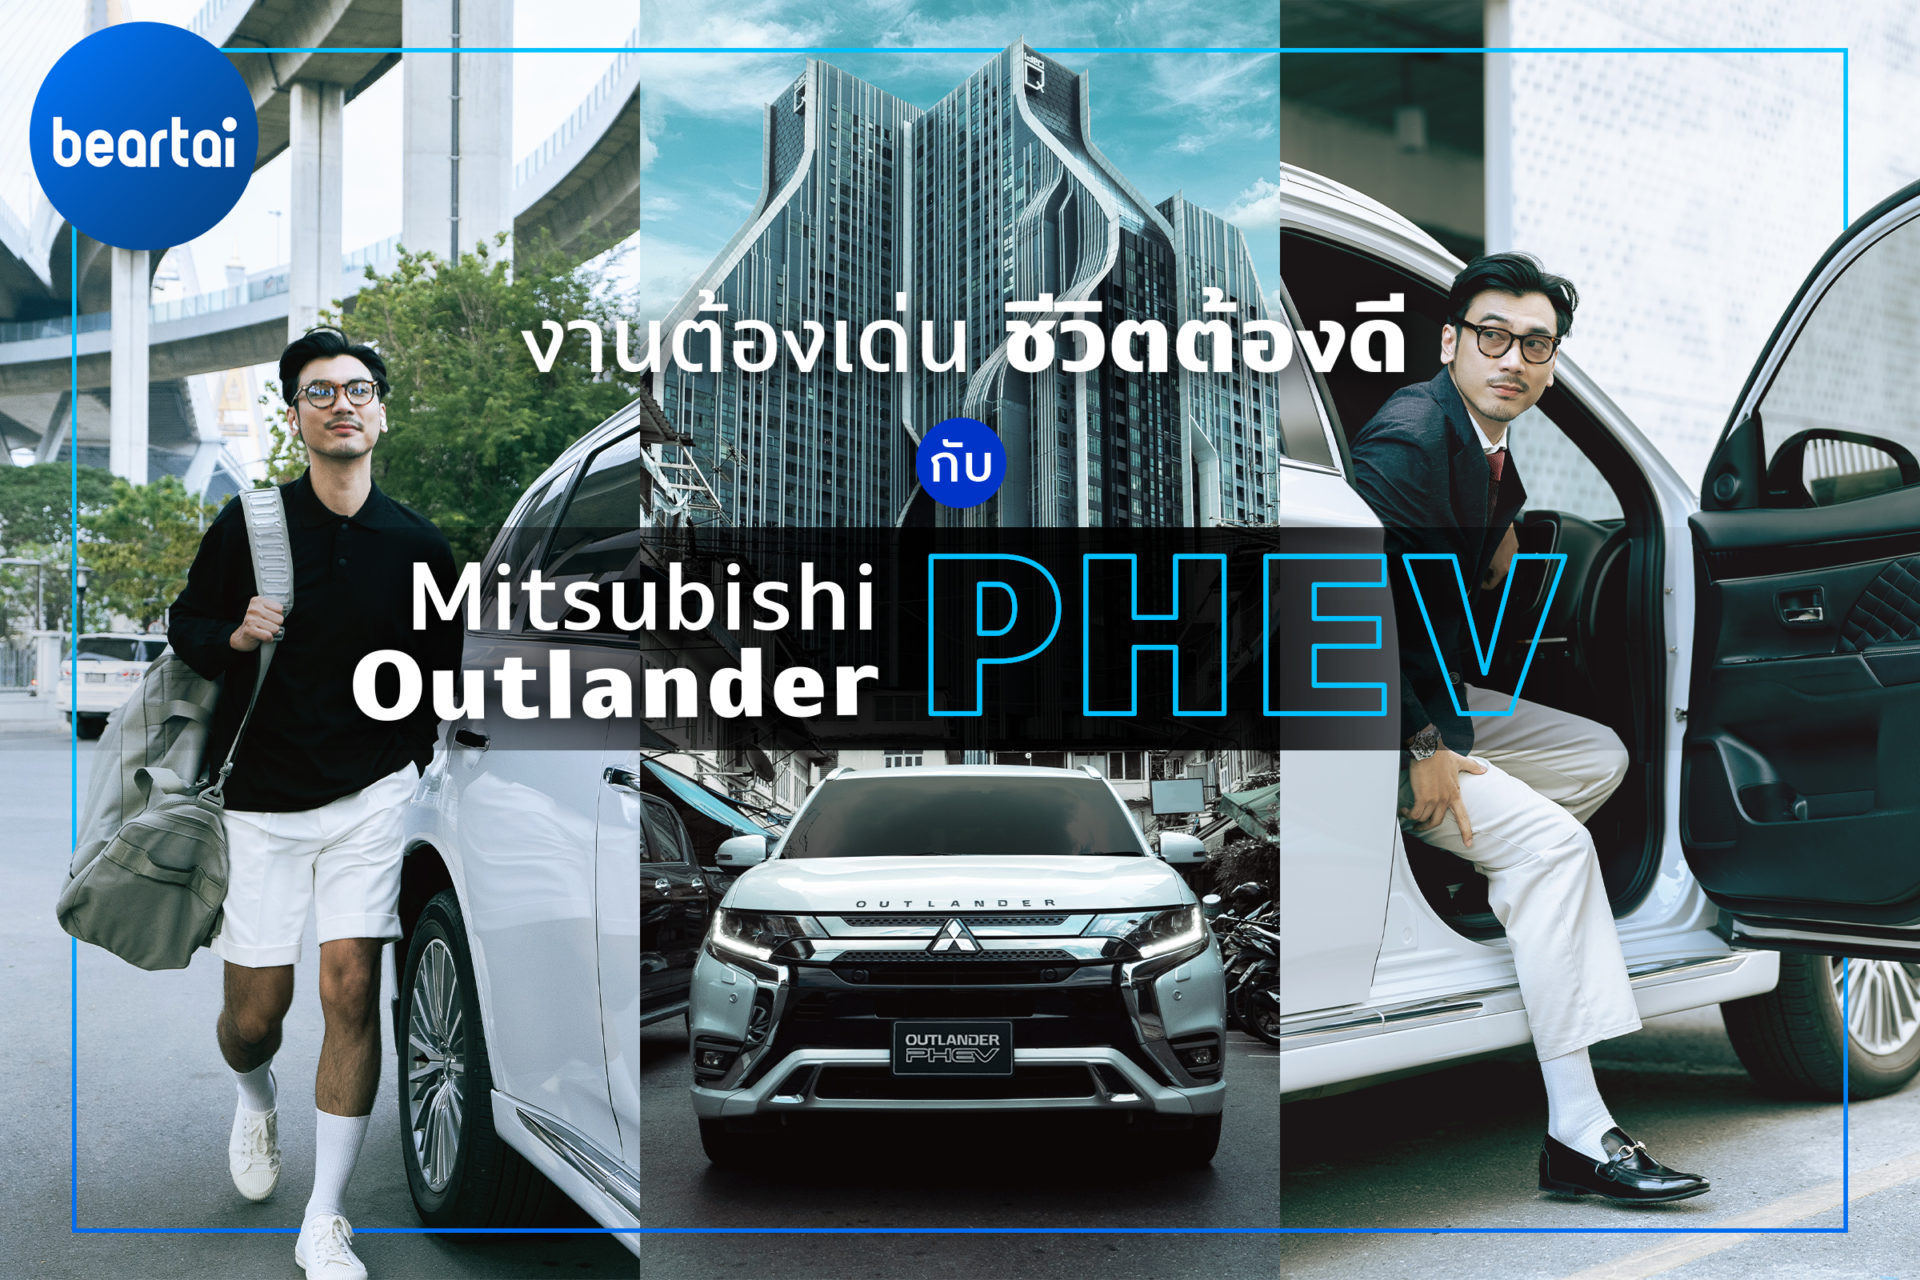 งานต้องเด่น ชีวิตต้องดี ไปกับ Mitsubishi Outlander PHEV